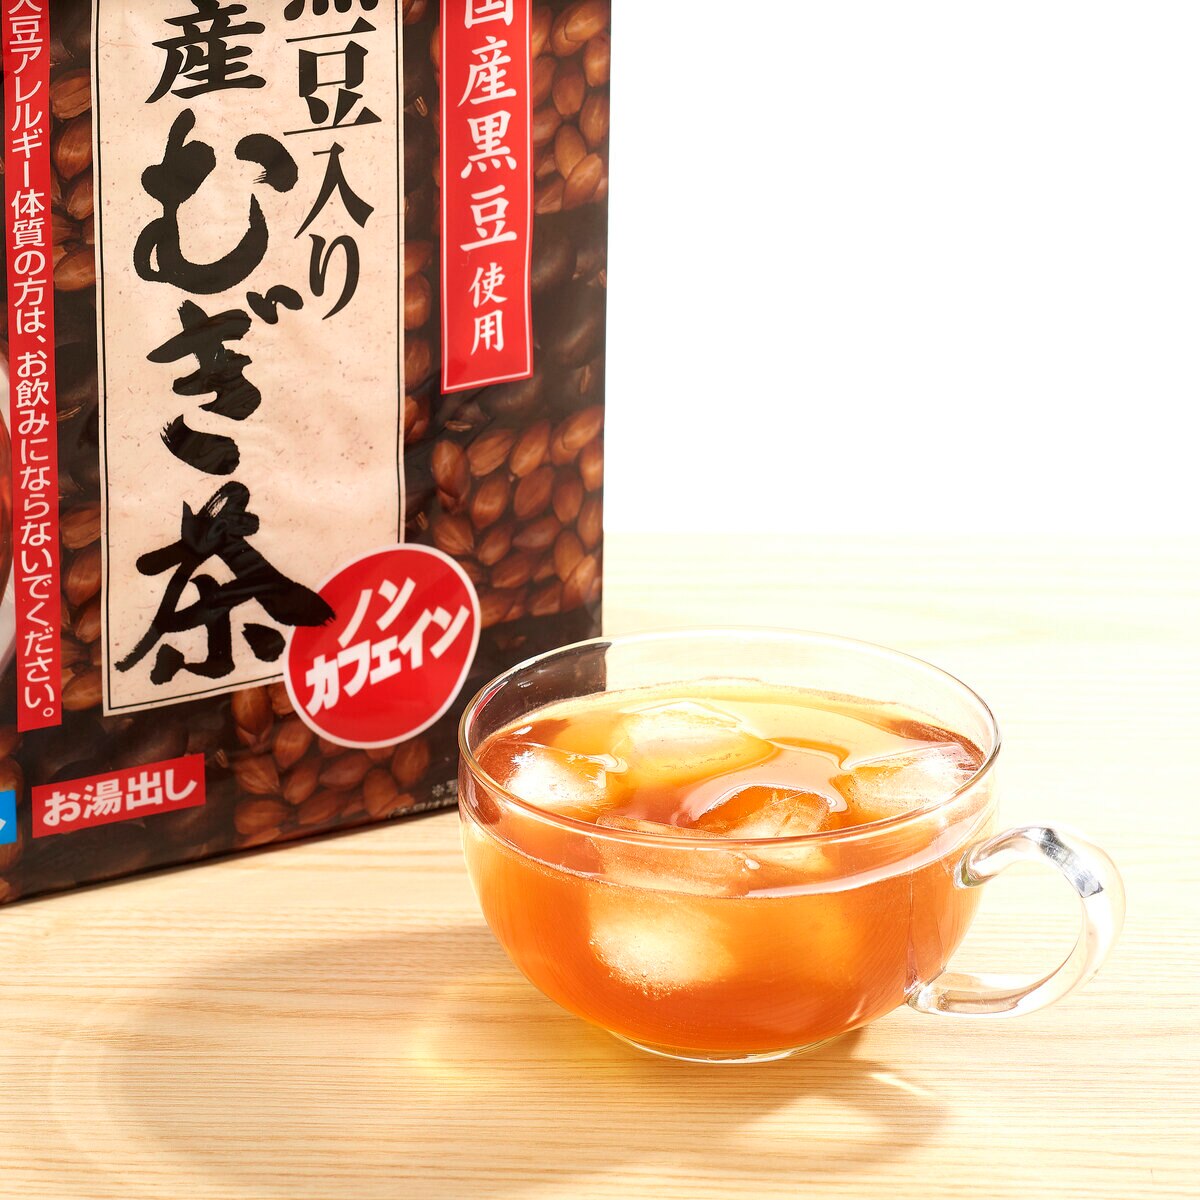 伊藤園黒豆入り国産麦茶 30袋 x Costco Japan